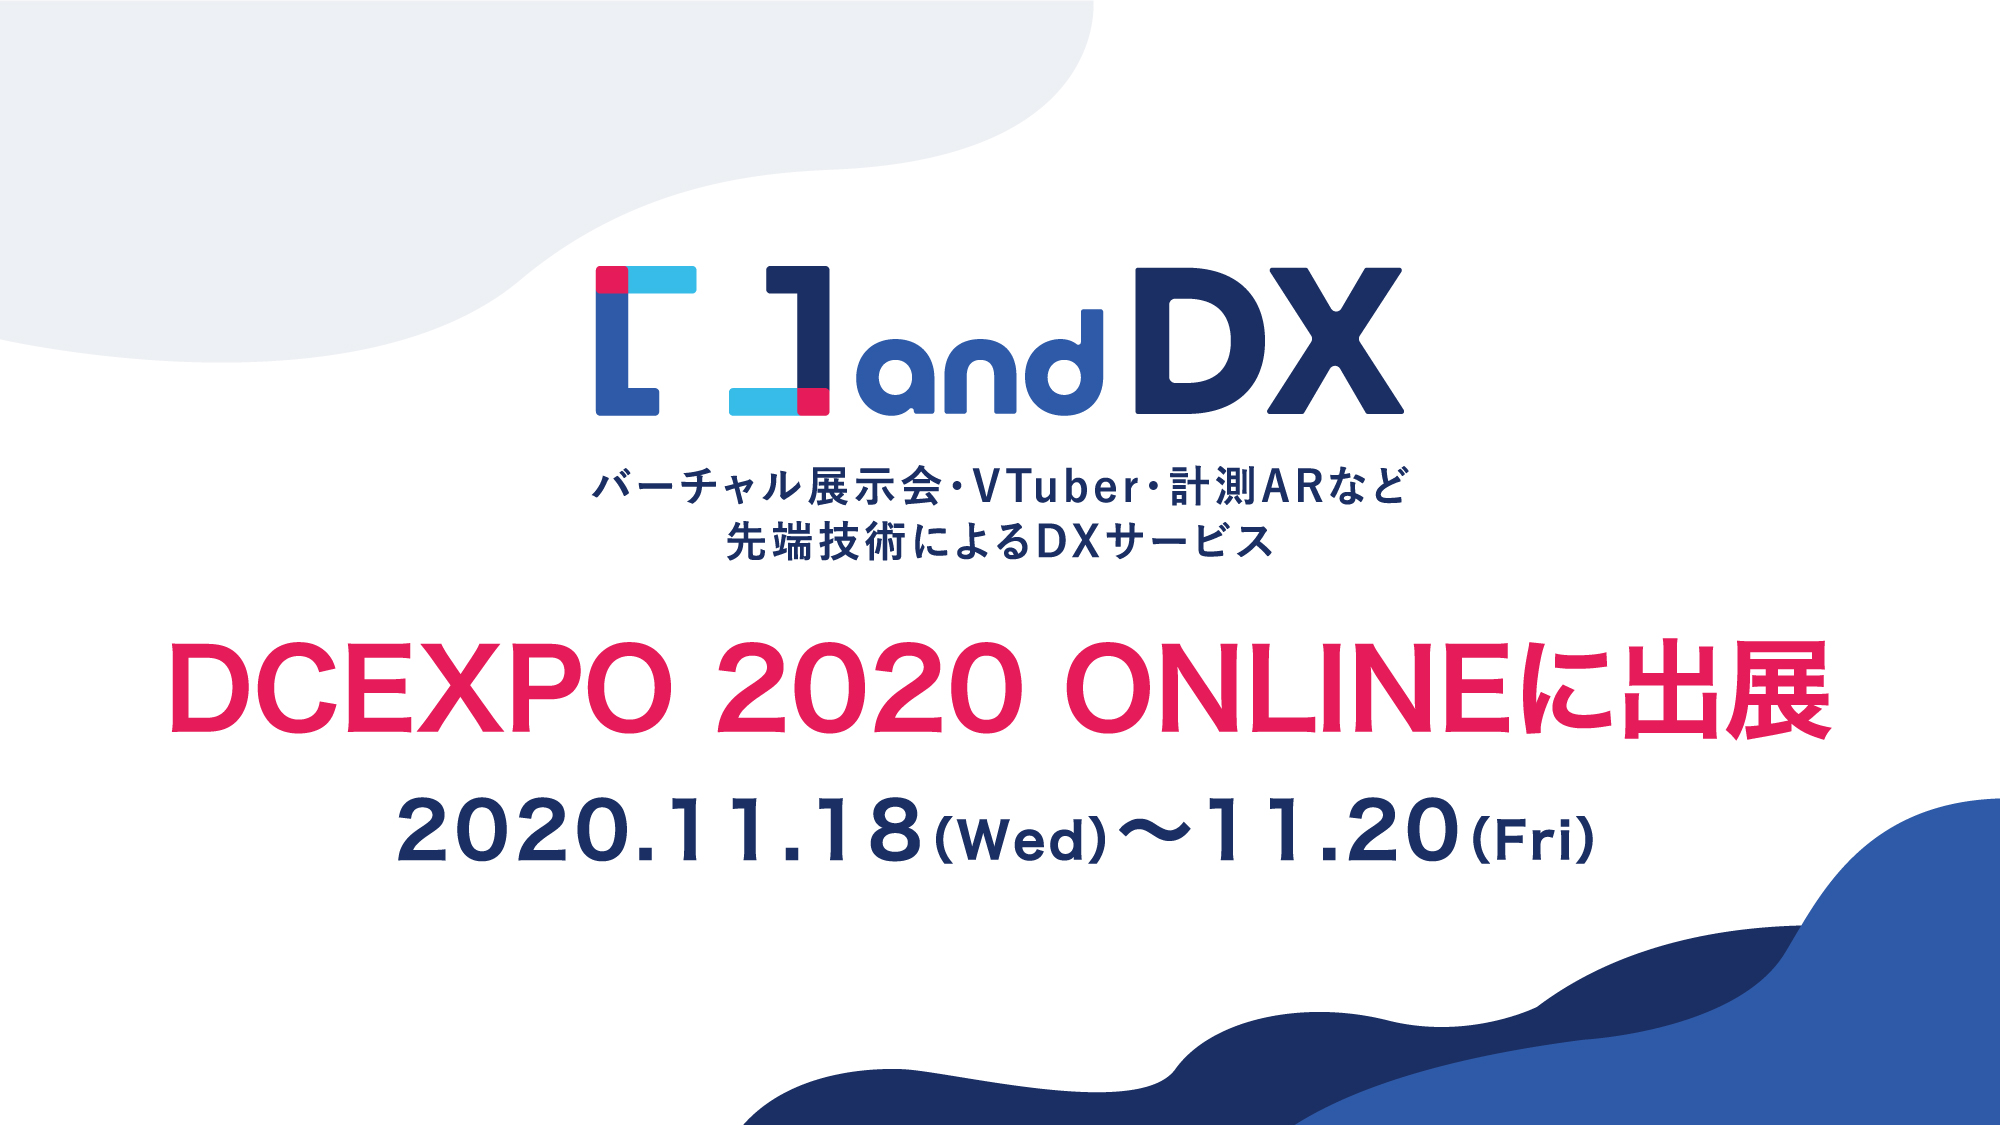 株式会社アイデアクラウド「デジタルコンテンツEXPO 2020 ONLINE」に出展決定。バーチャル展示会・VTuber・計測ARなど先端技術によるDXサービスを紹介。